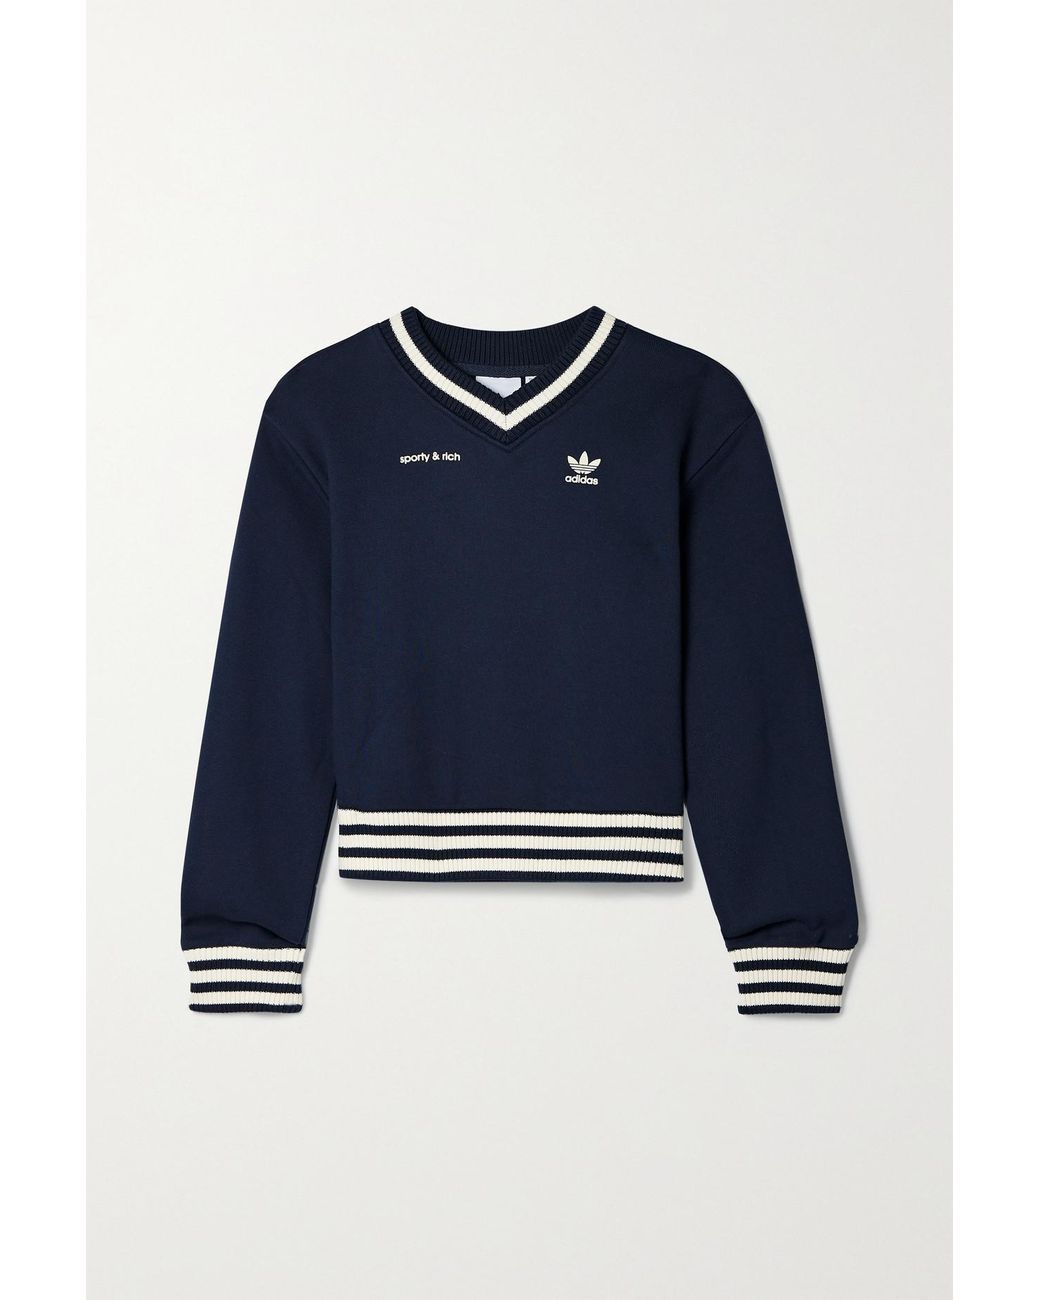 Adidas Originals + Sporty & Rich Flocked Cotton-Jersey Sweatshirt In Blue |  Lyst